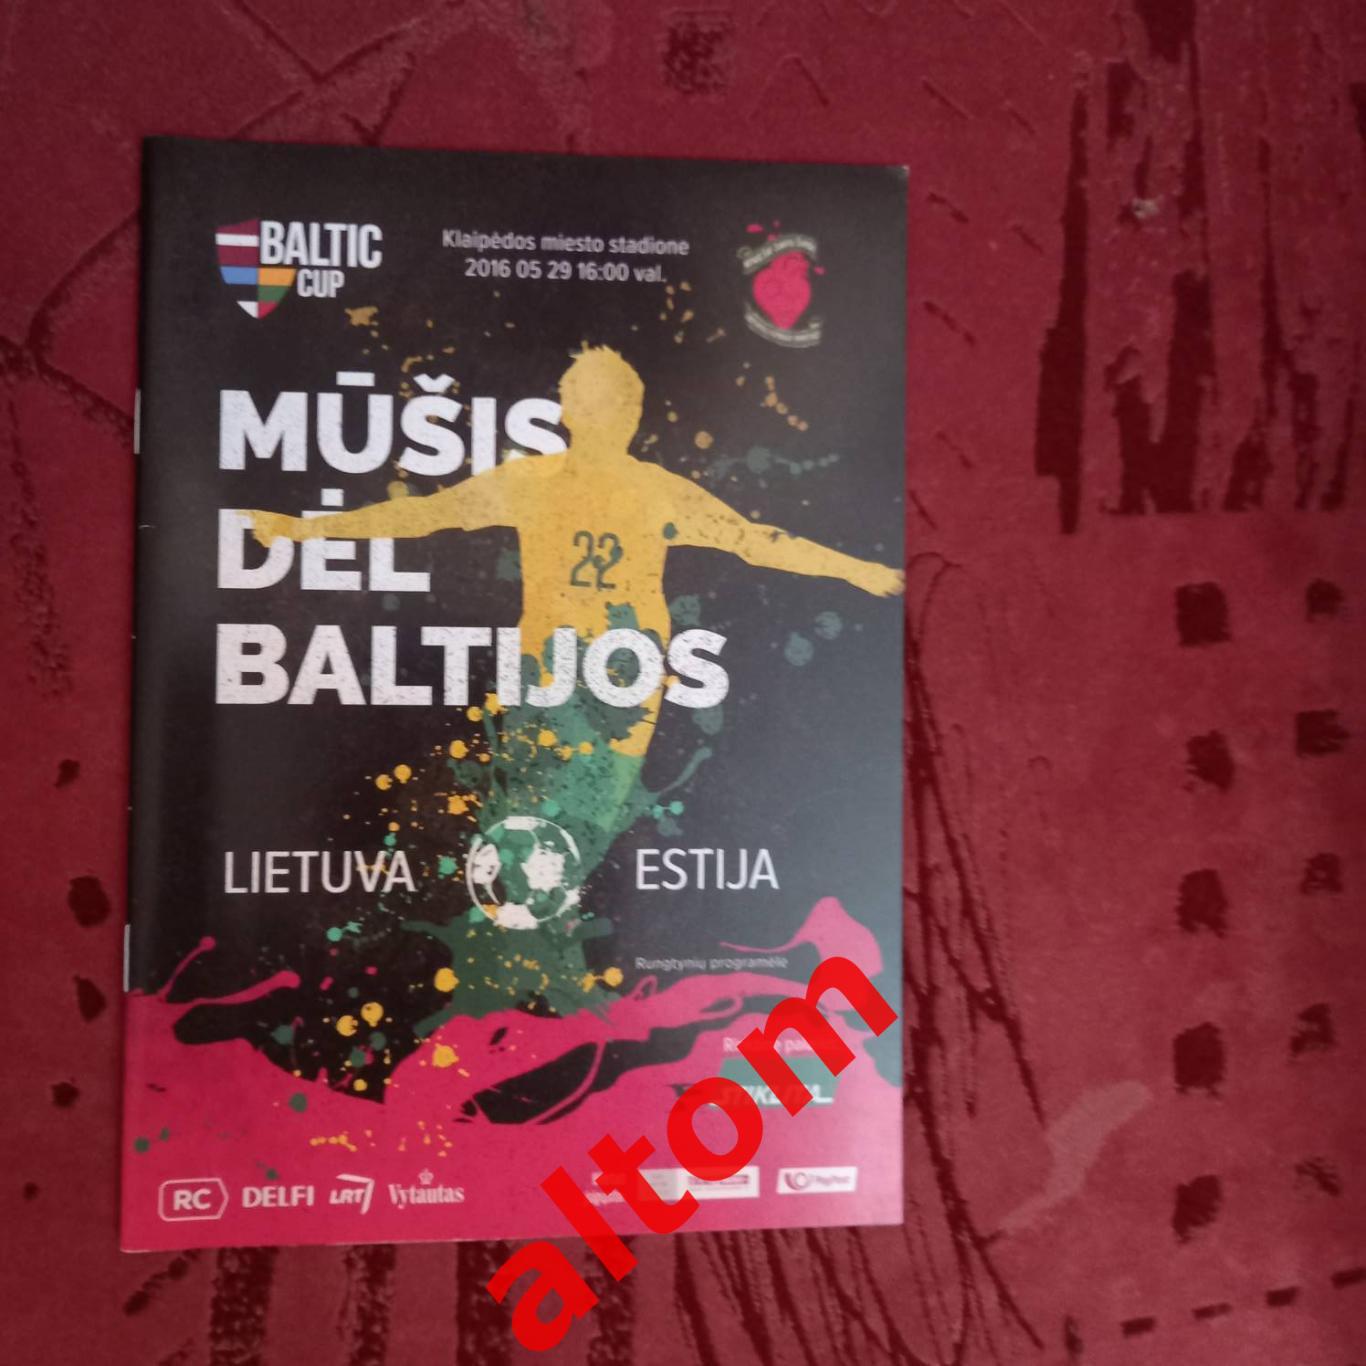 Литва - Эстония. Кубок Балтии 2016